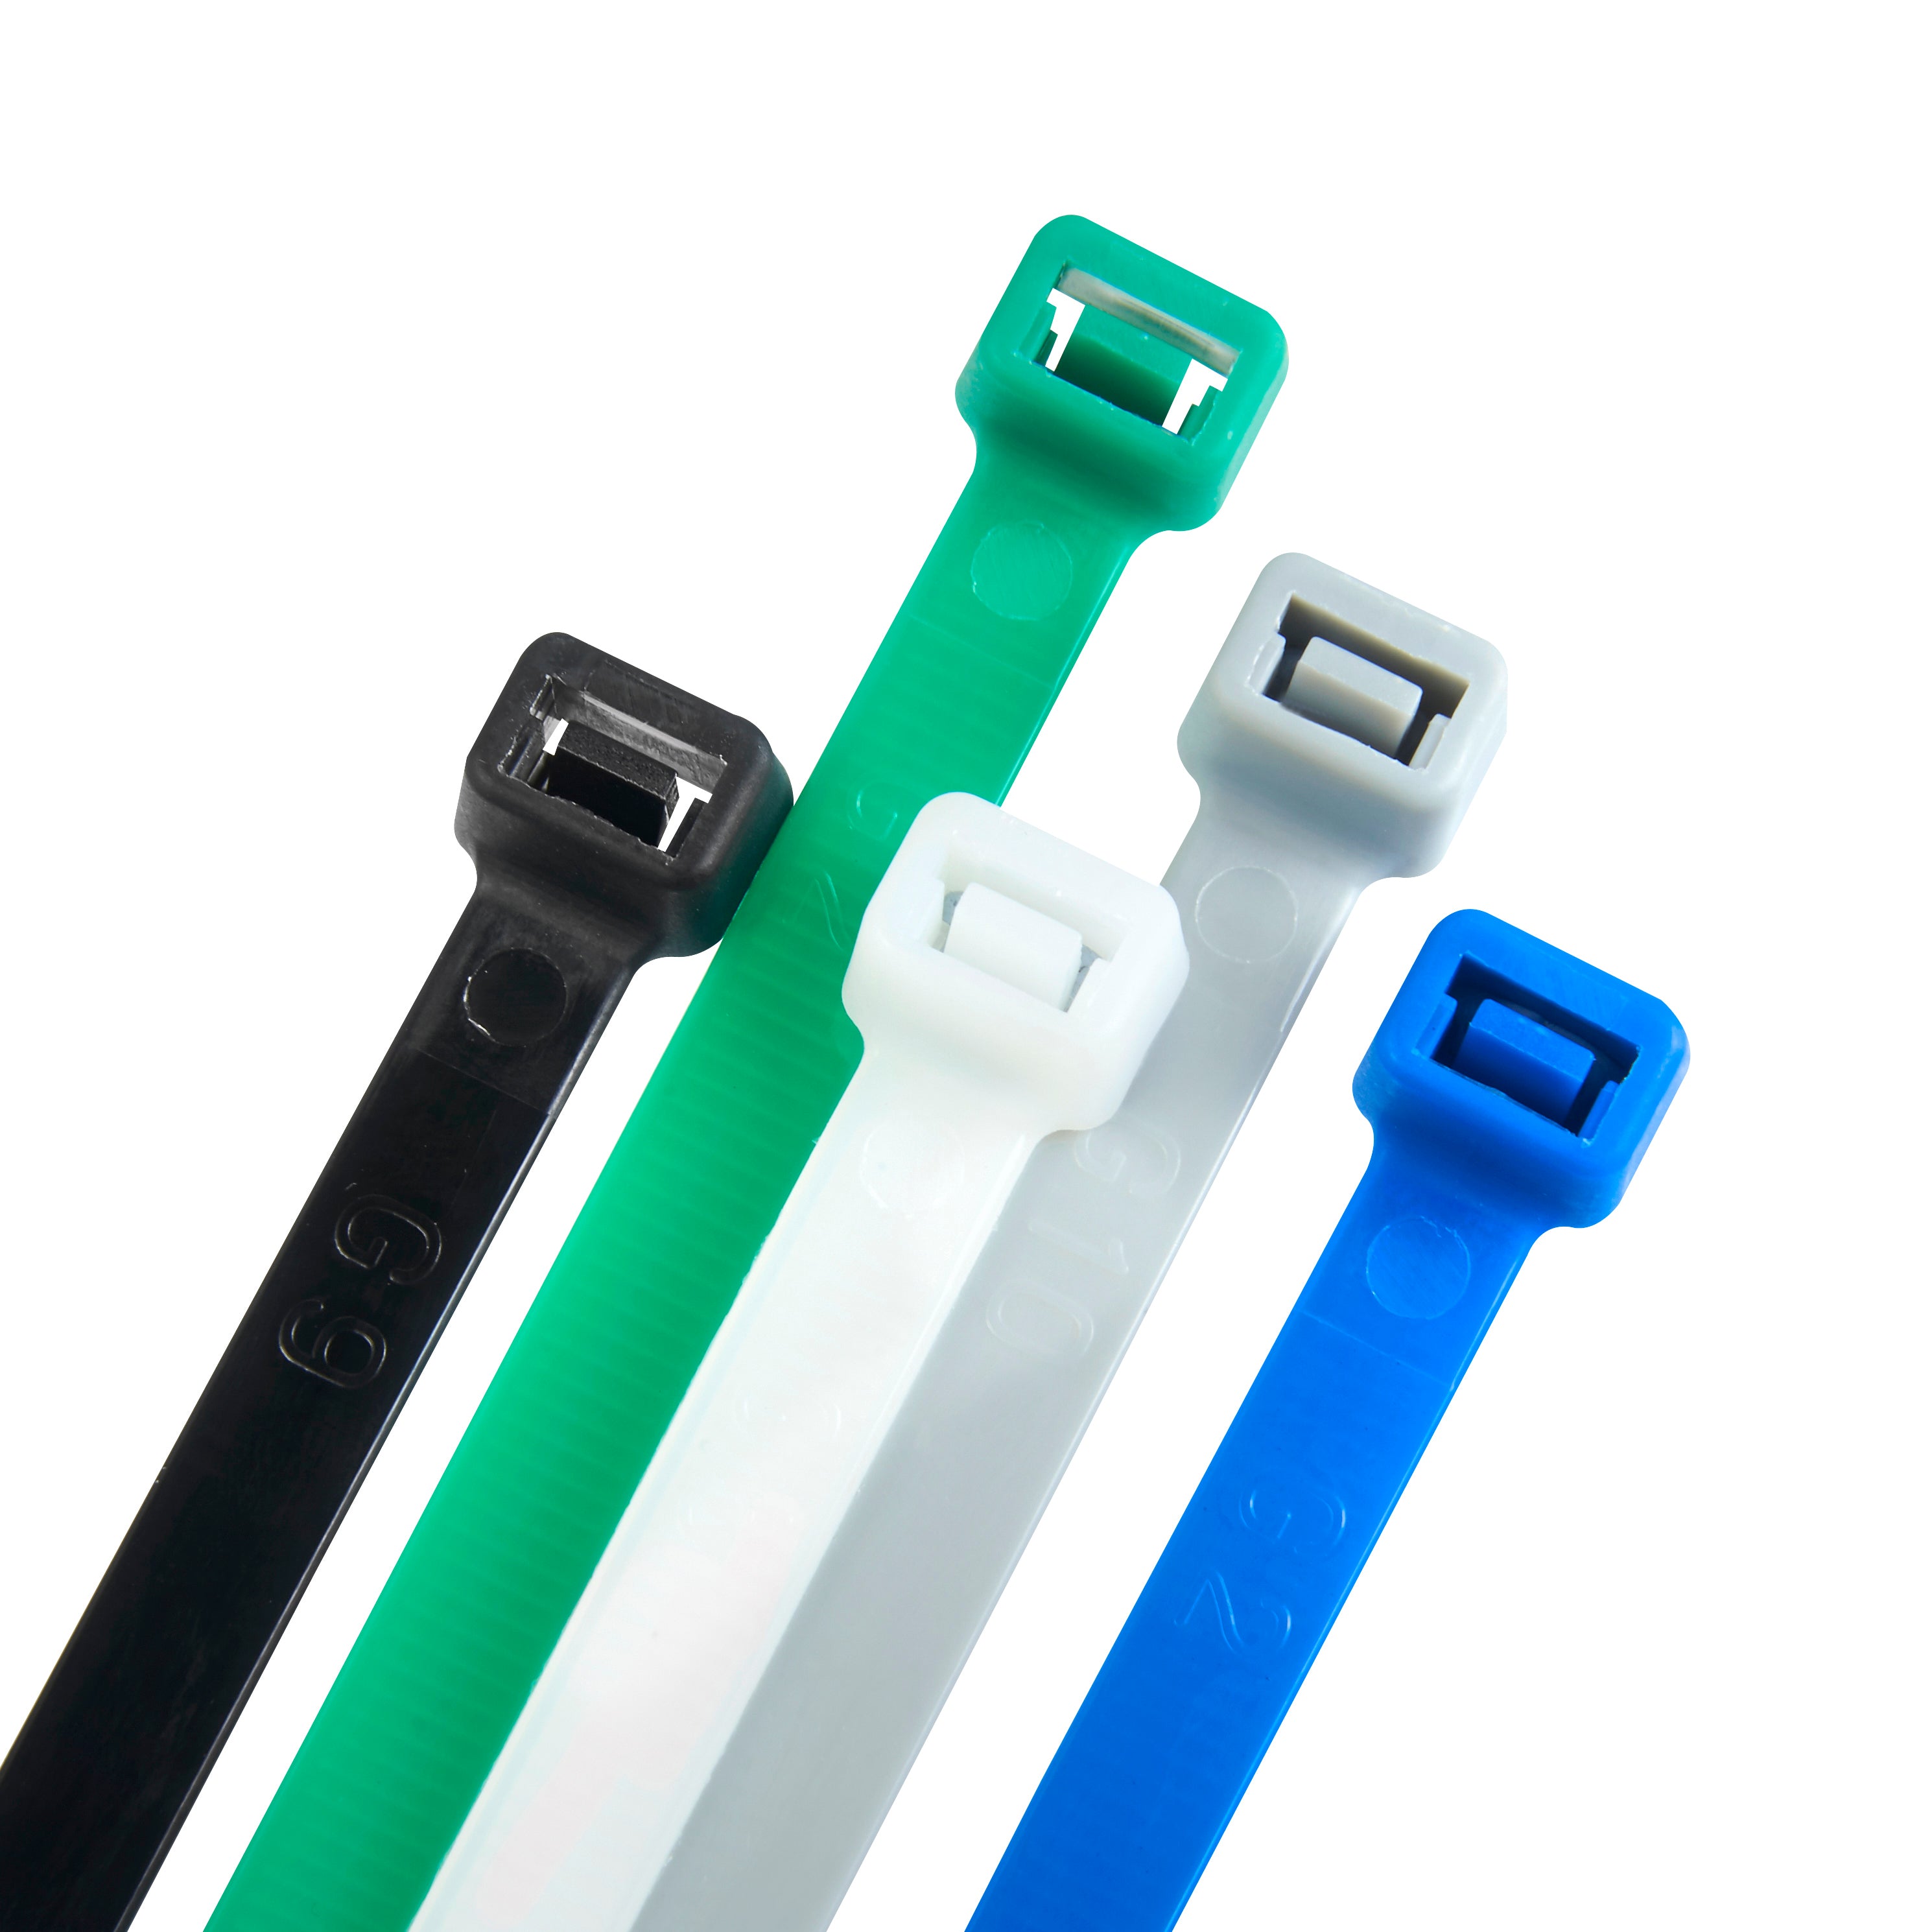 Haus Projekt 100x2.5mm Small Cable Ties, 100pcs Premium Industrial Zip Ties